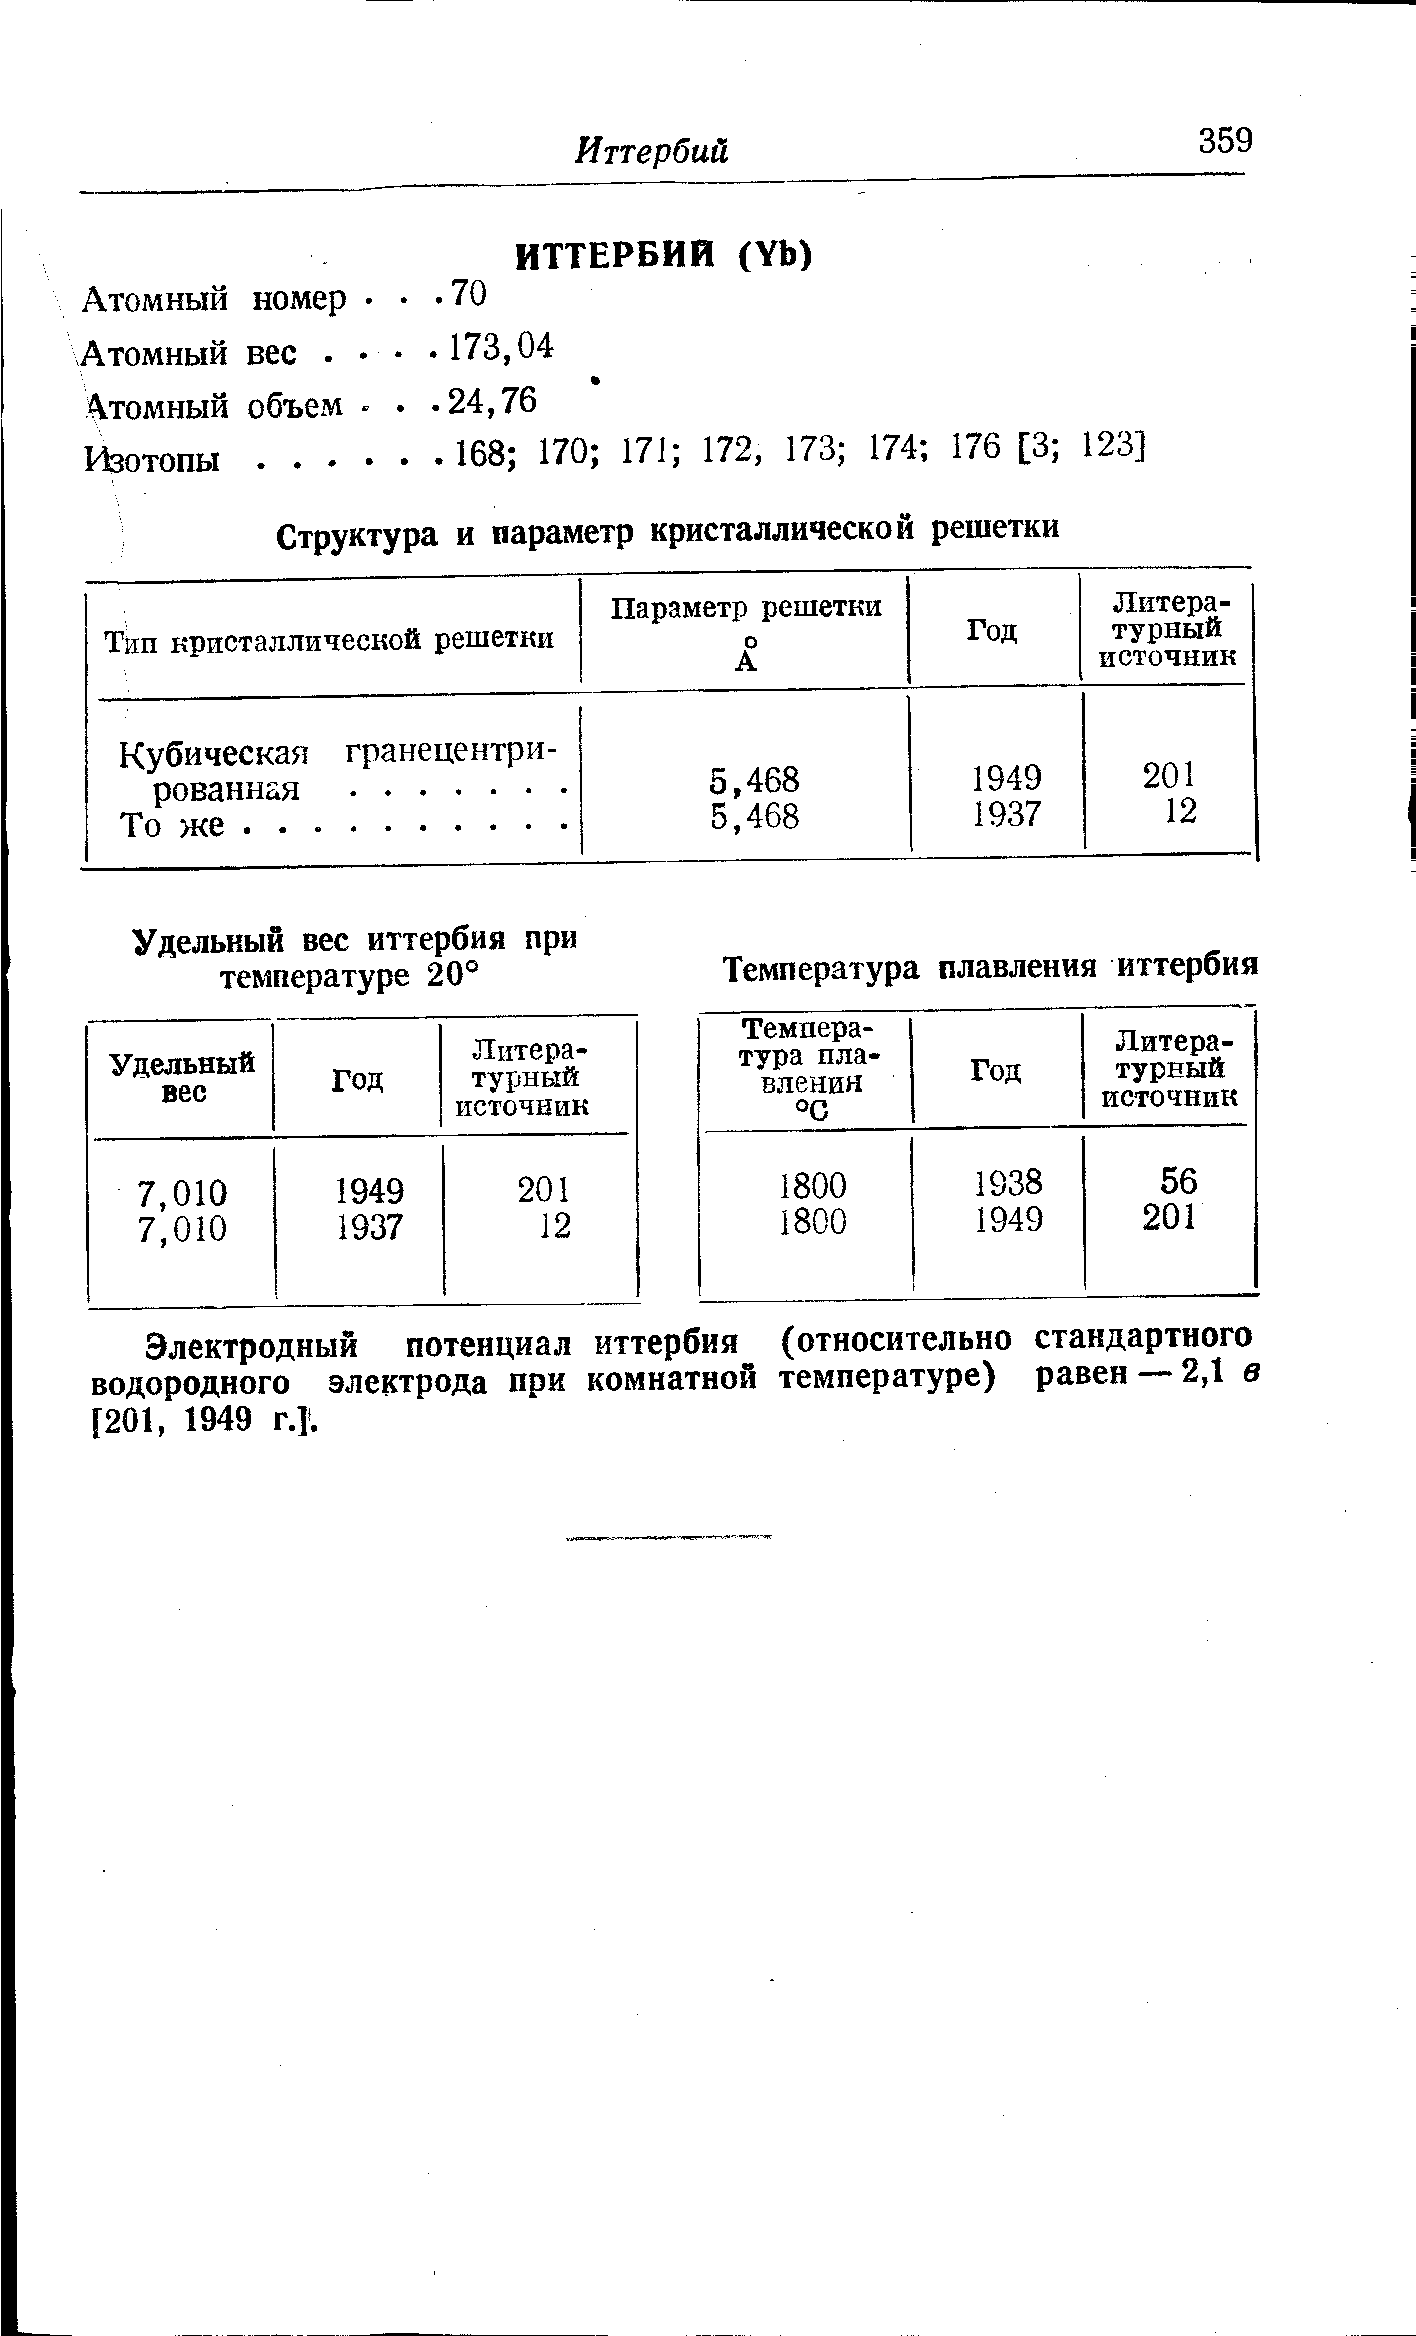 Электродный потенциал иттербия (относительно стандартного водородного электрода при комнатной температуре) равен — 2,1 в [201, 1949 г.]. 